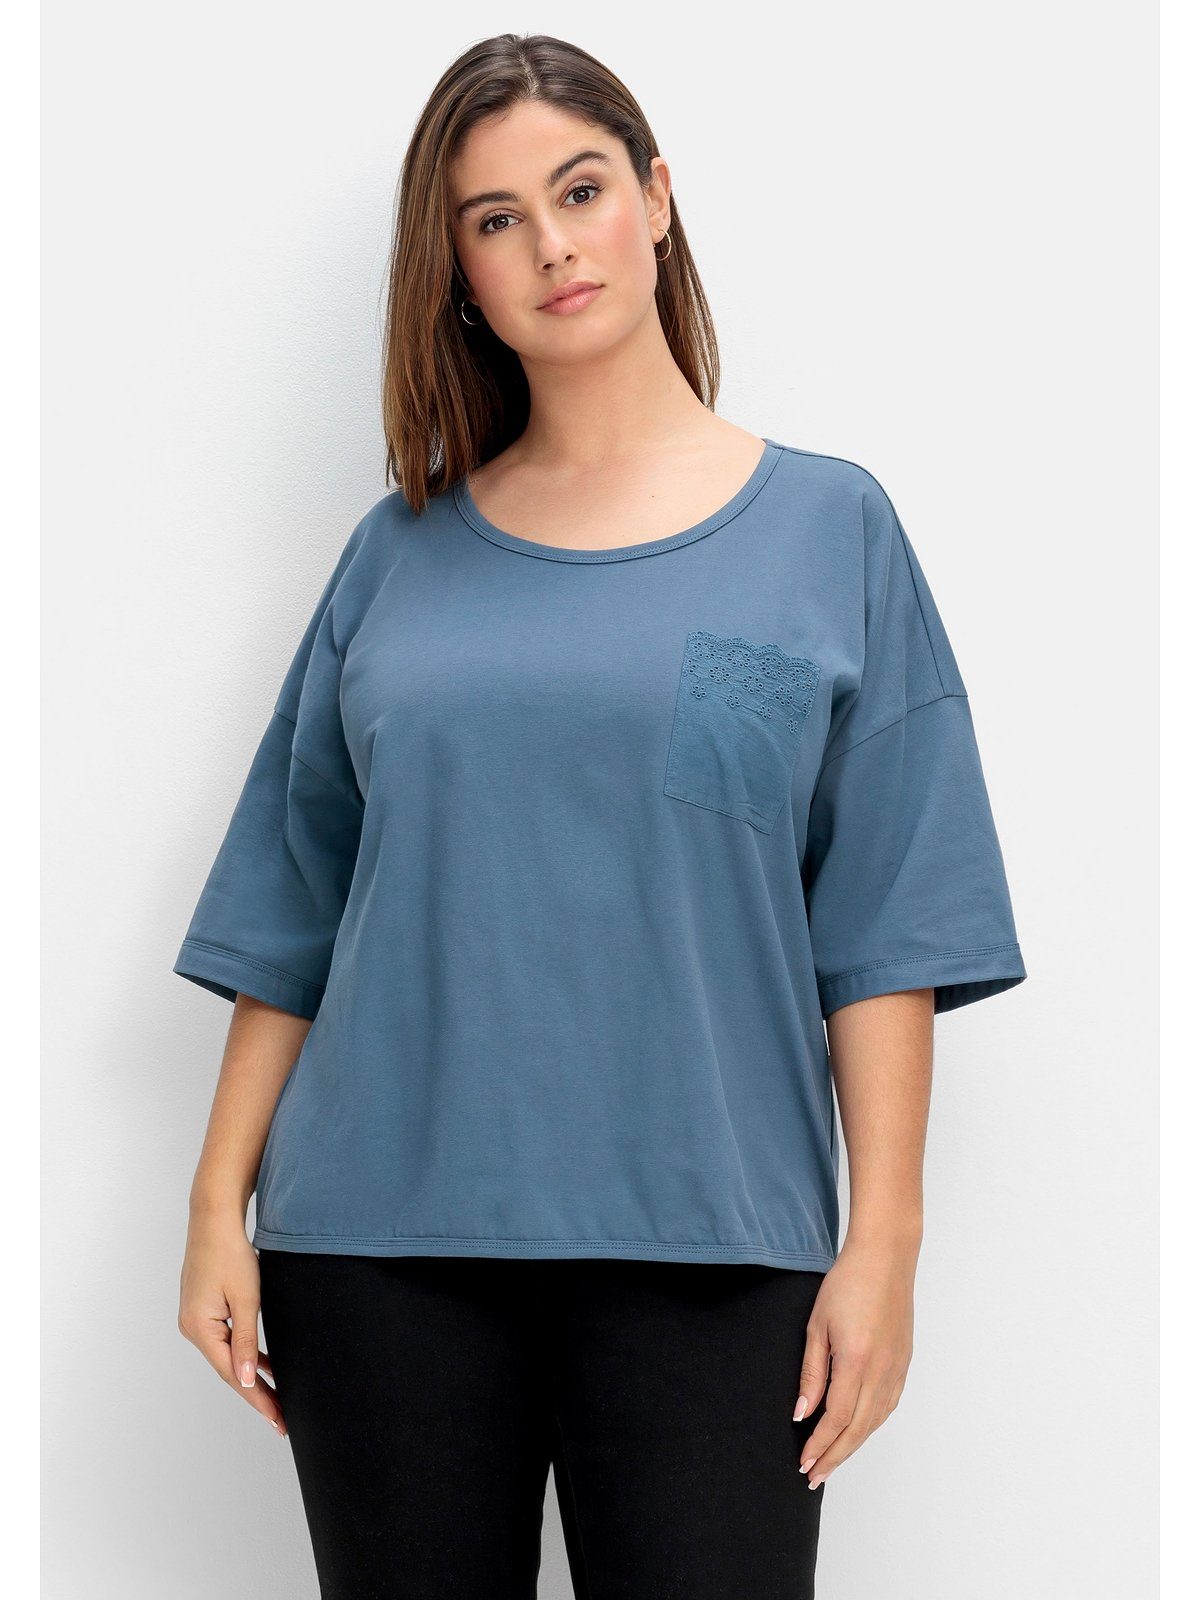 Sheego T-Shirt Große Größen aus Spitze Brusttasche taubenblau mit